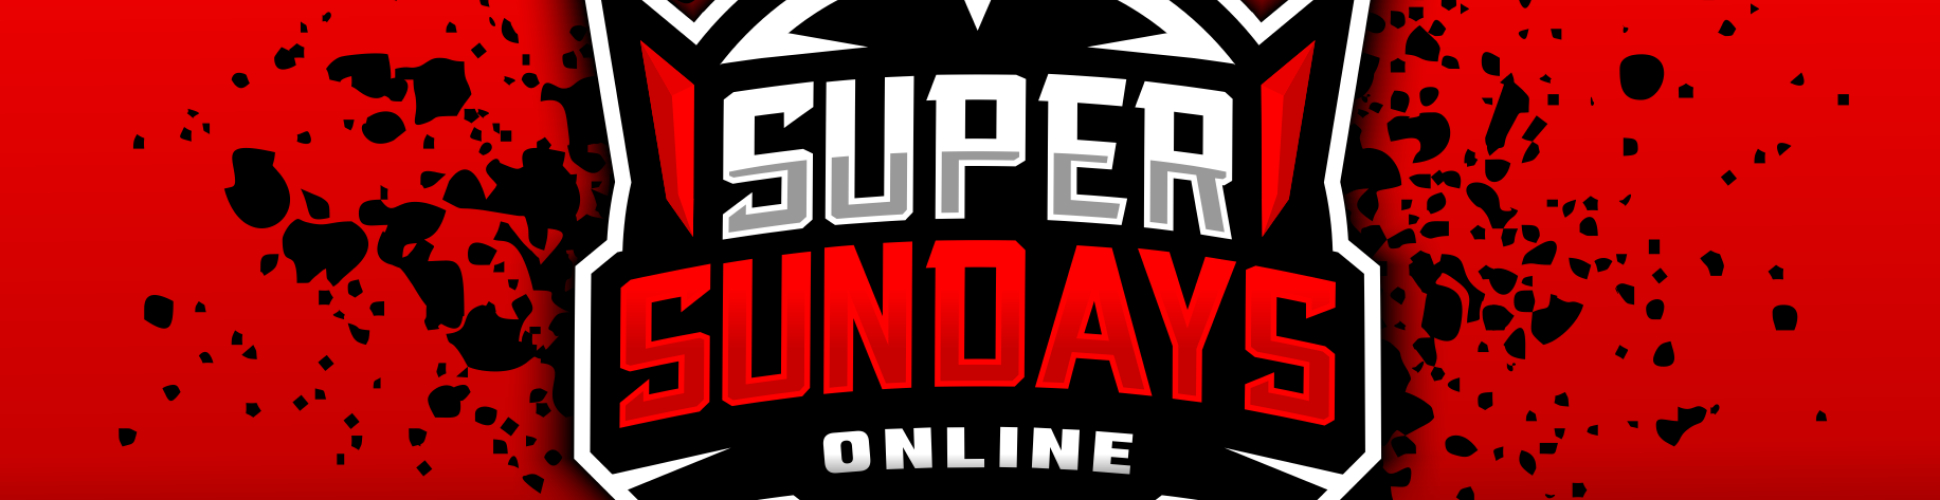 Super Sundays Online Episode 9: GGST